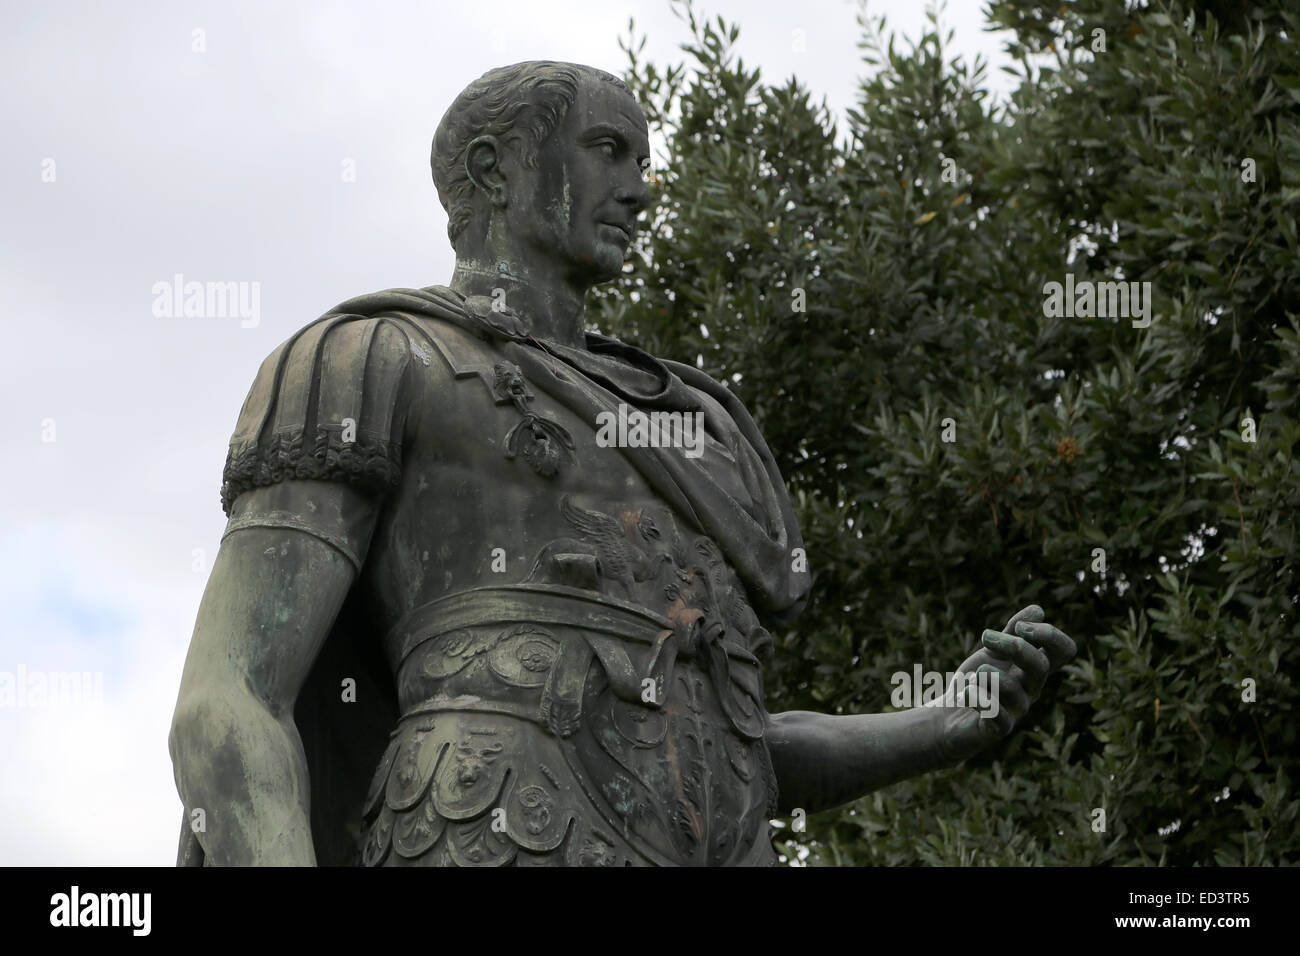 Statua in bronzo di Giulio Cesare (100-44 a.C.). Forum di Giulio Cesare. Roma. L'Italia. Dettaglio. Foto Stock